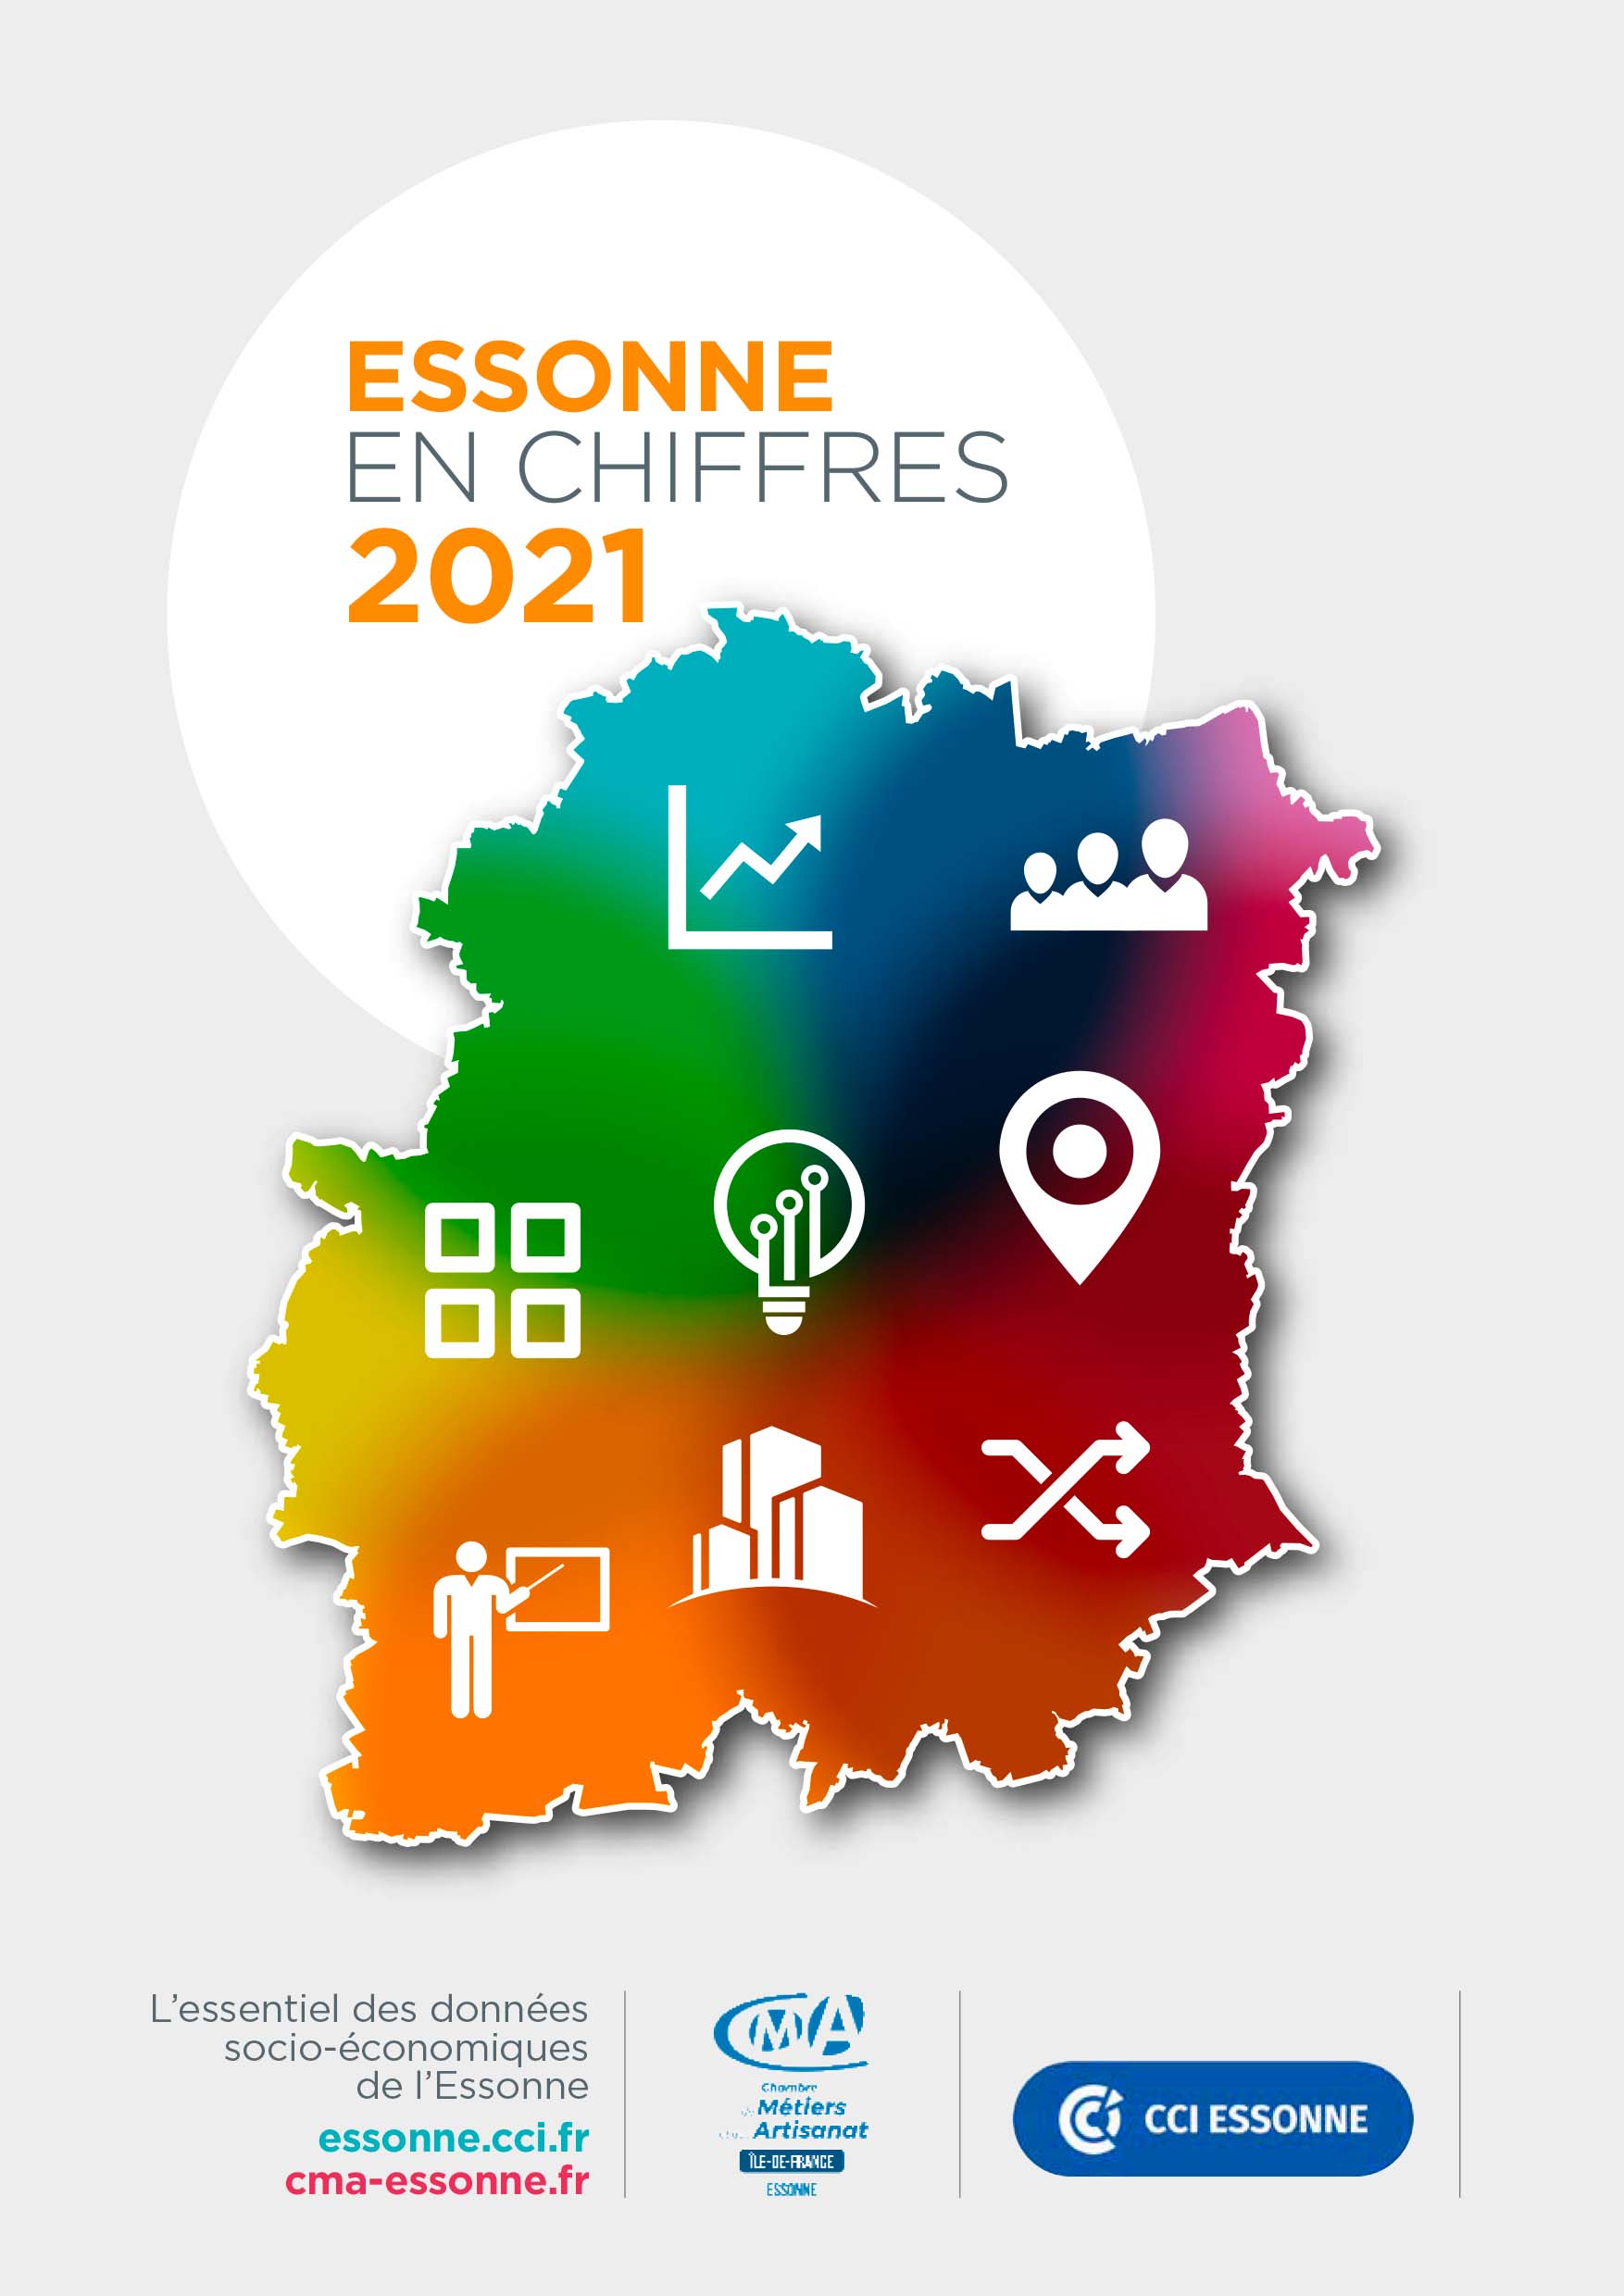 Essonne en chiffres 2021